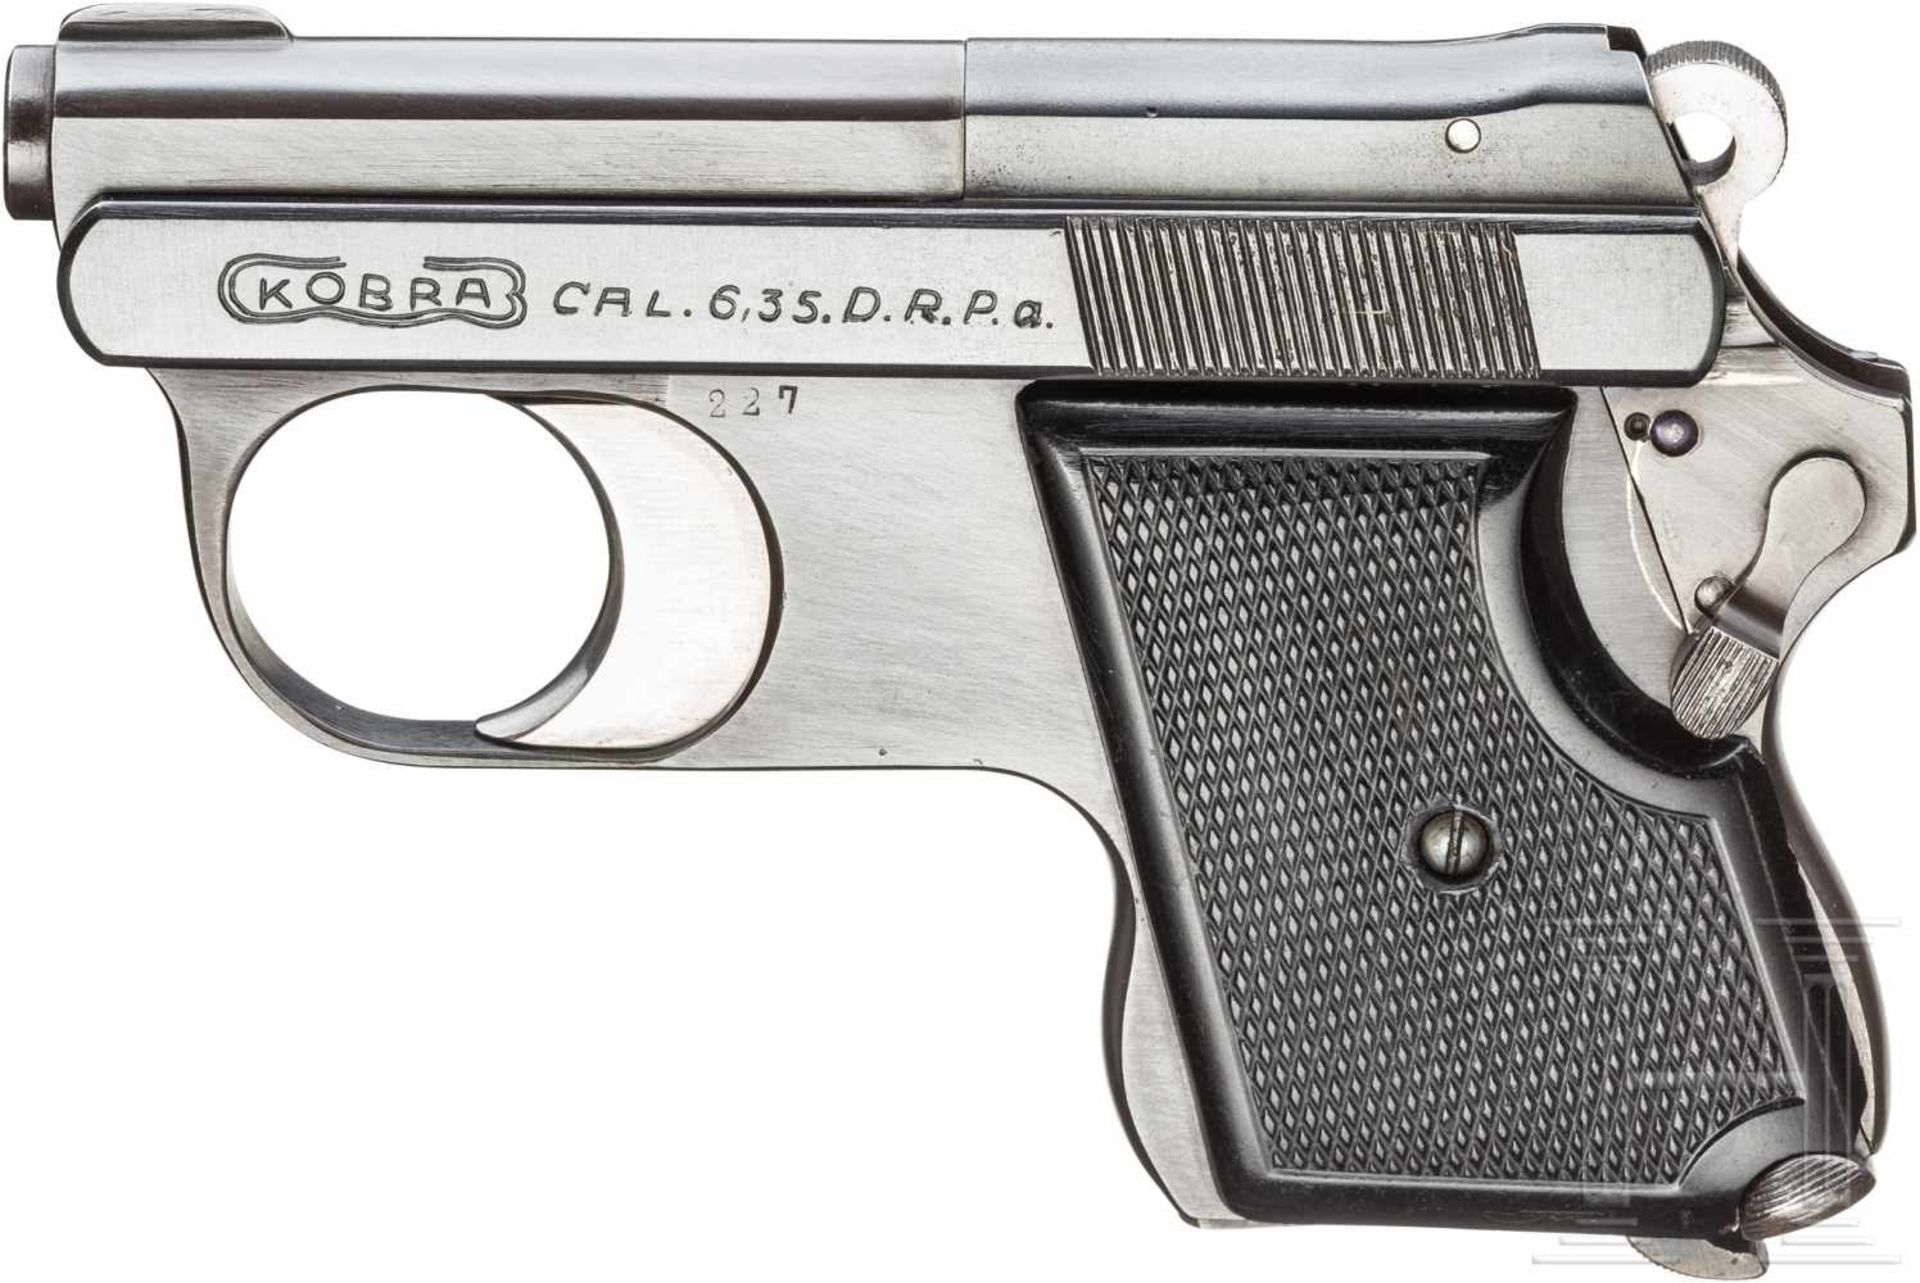 Pistole Kobra, um 1930Kal. 6,35 mm Brown., Nr. 227, Blanker Lauf, Länge 58 mm. Sechsschüssig.